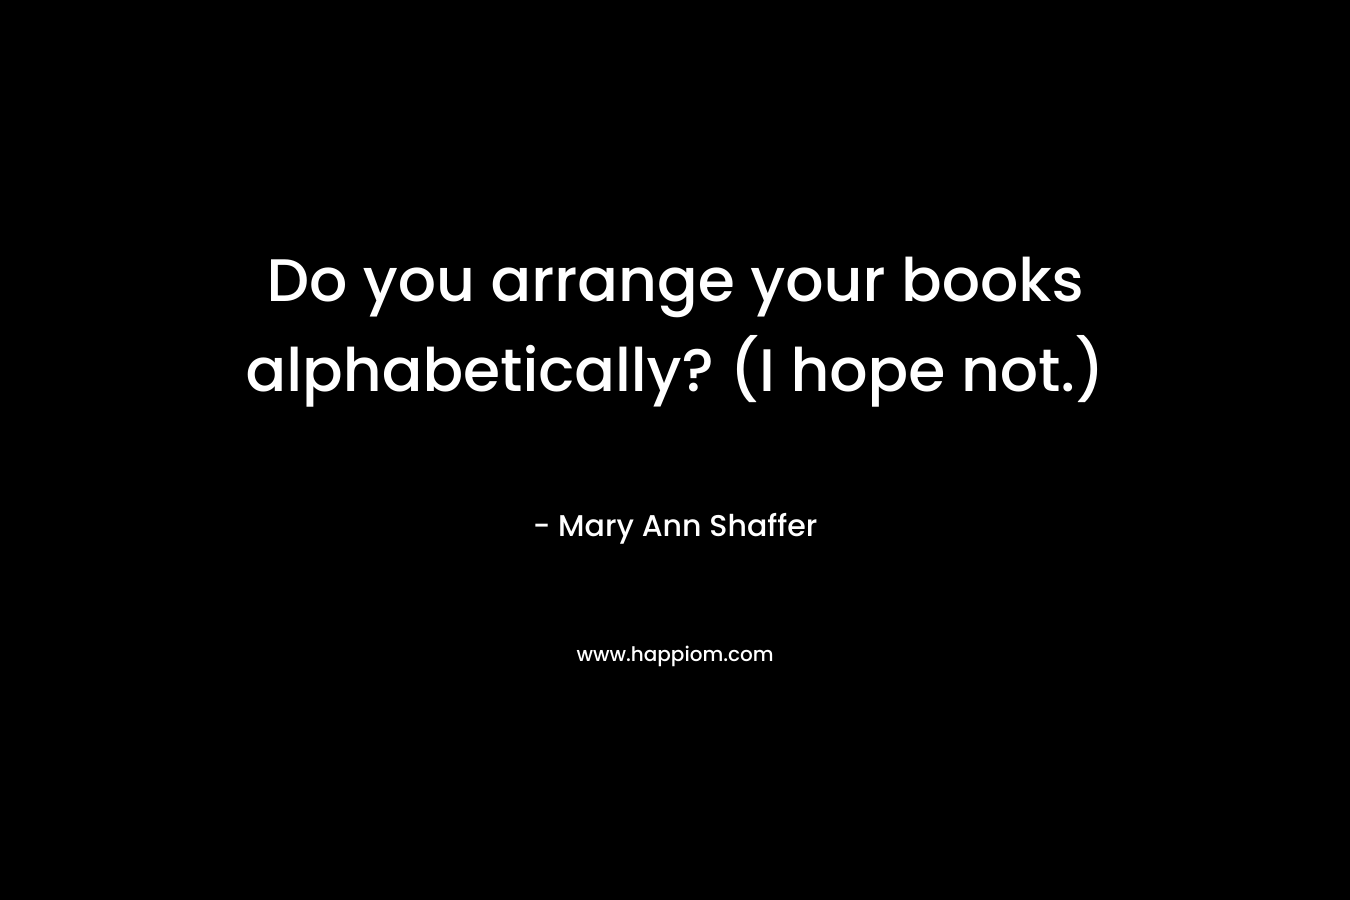 Do you arrange your books alphabetically? (I hope not.)